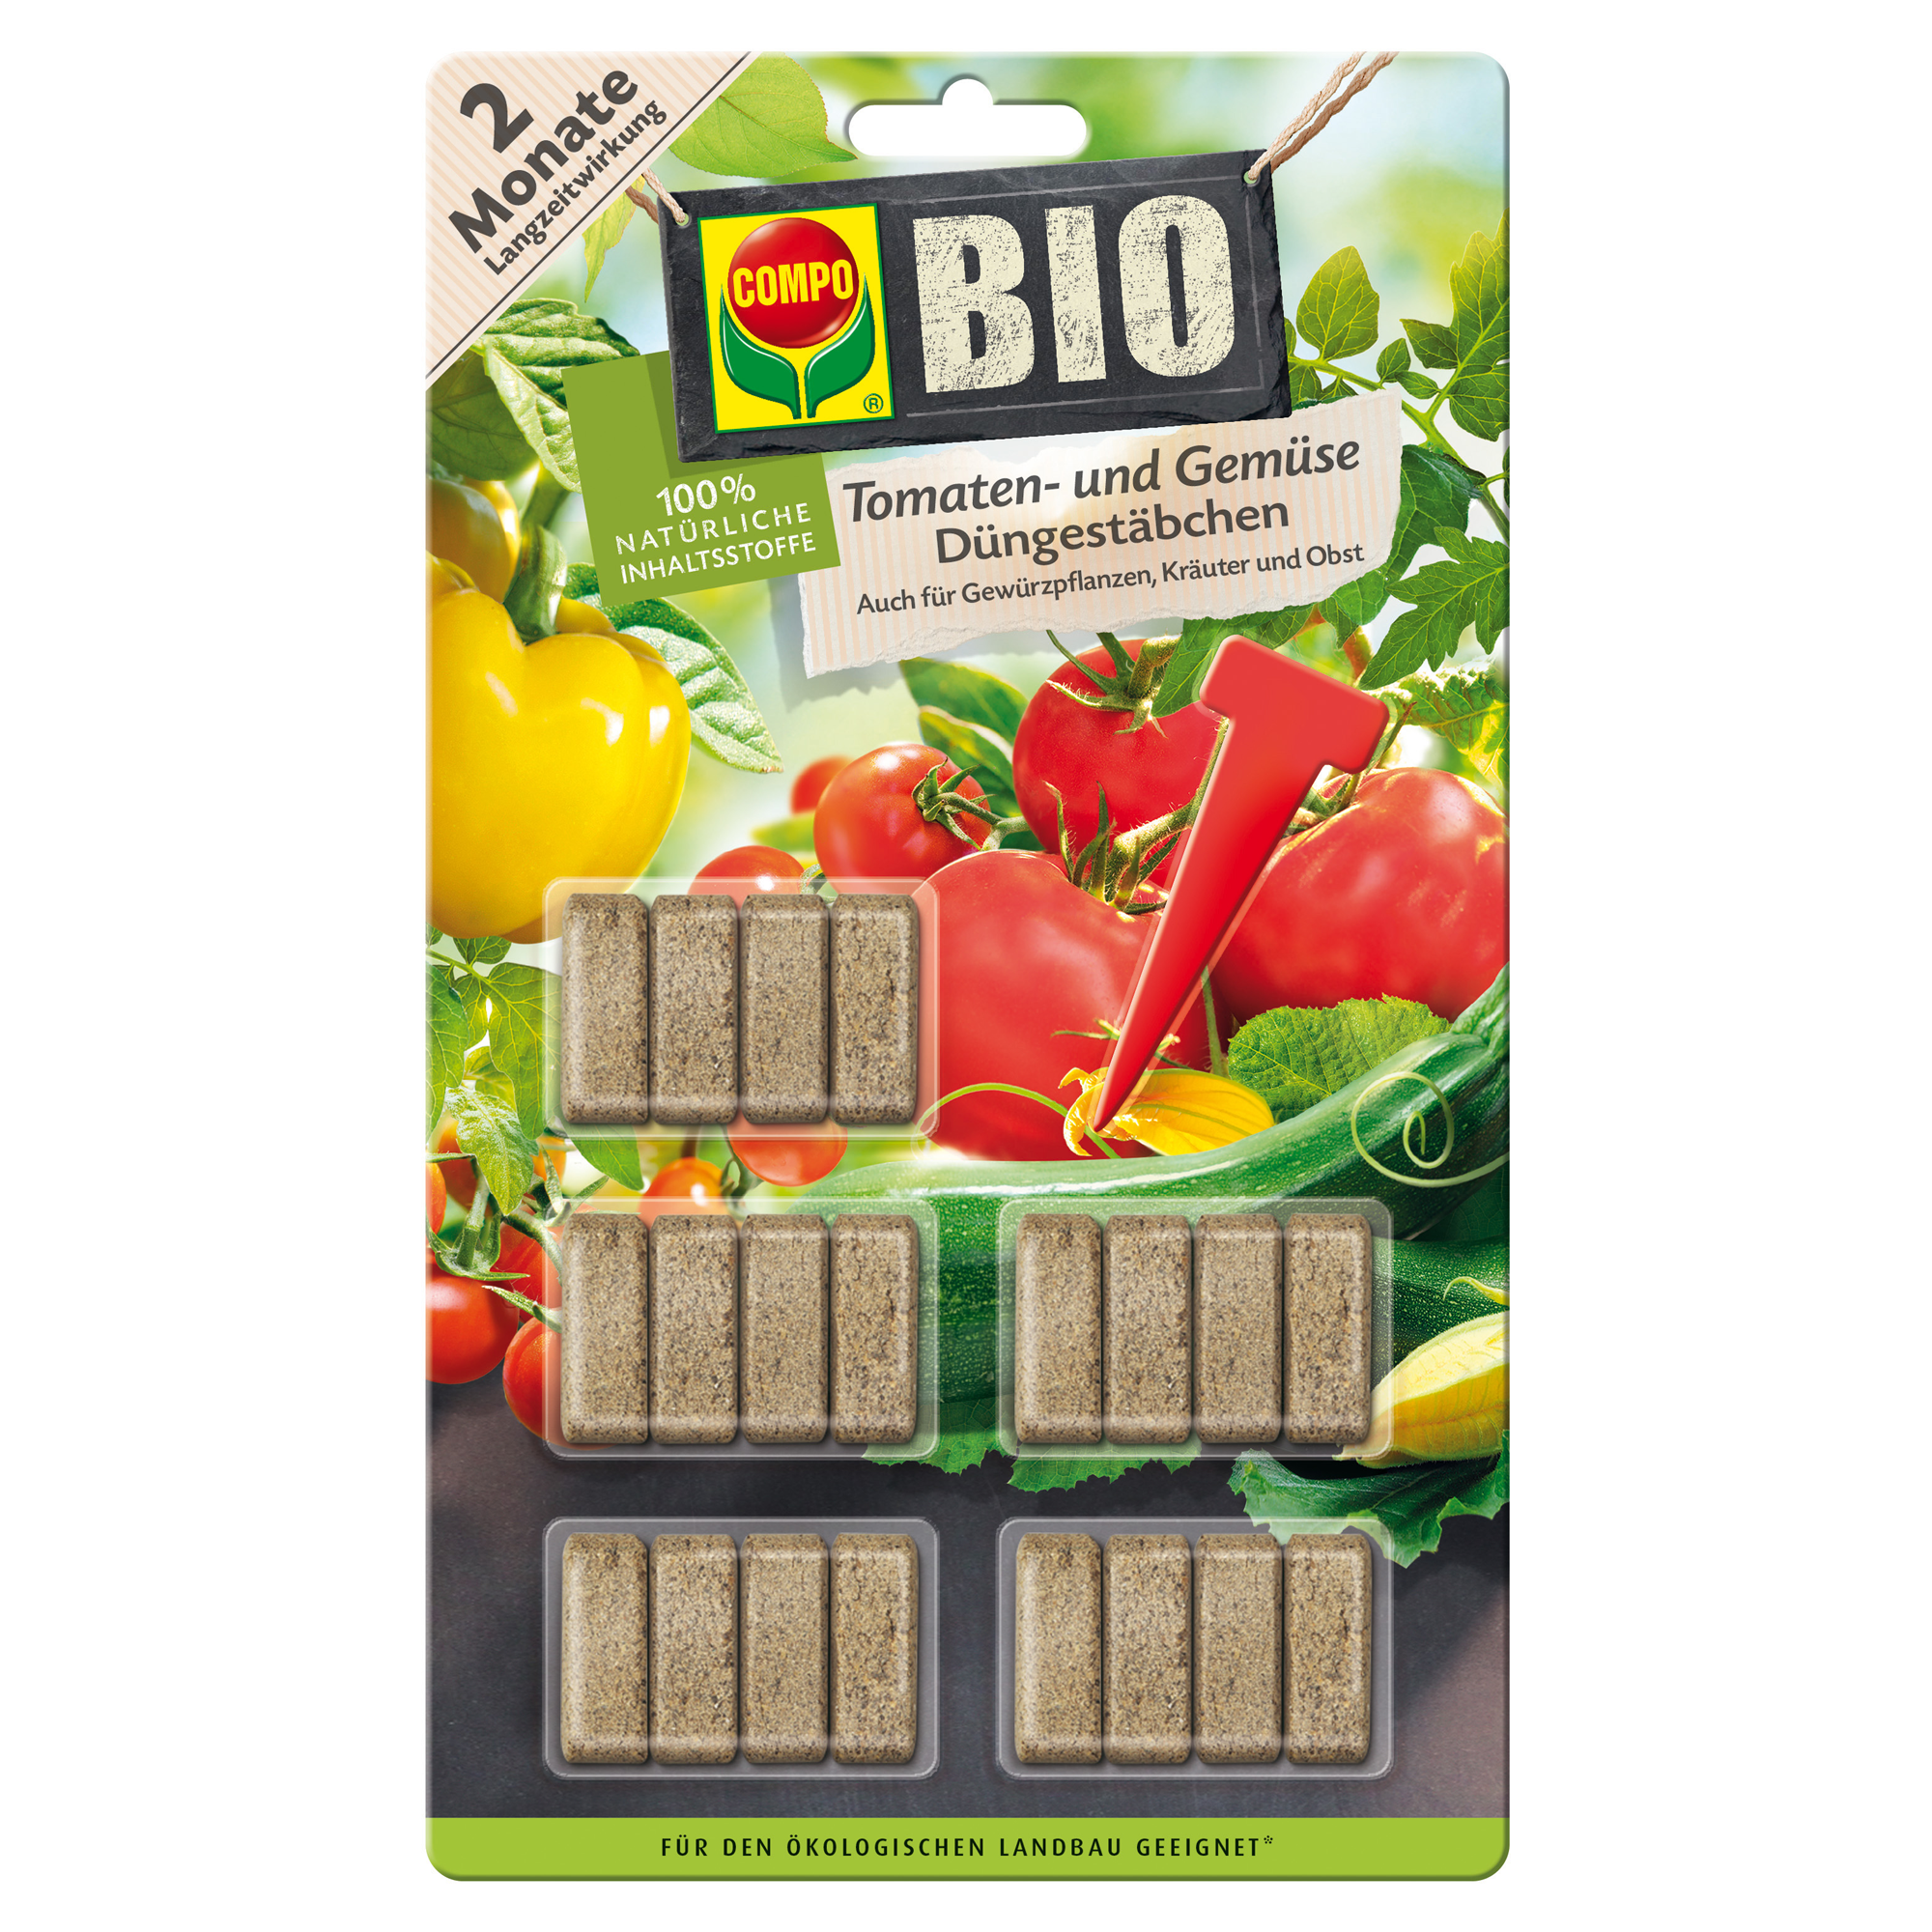 Bio-Düngestäbchen für Tomaten und Gemüse 20 Stück + product picture